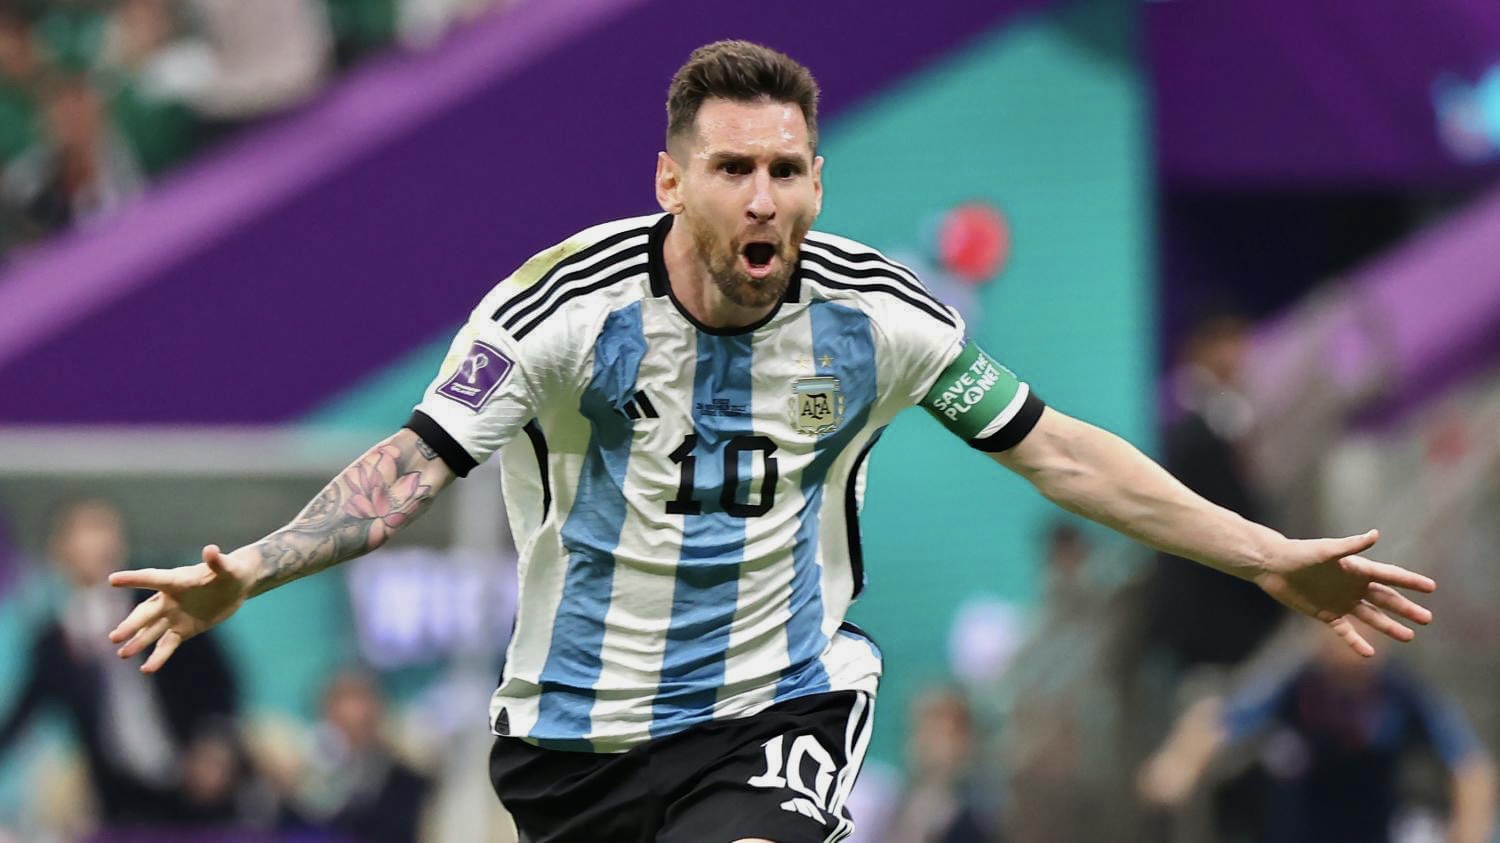 Lionel Messi, ngôi sao của bóng đá thế giới, đã có một mùa giải tuyệt vời và đạt được nhiều thành tích đáng kinh ngạc. Messi thực sự là “ông vua” của bóng đá thế giới với sự lãnh đạo của anh ấy trên sân, tài năng và tinh thần thể thao xuất sắc của anh. Hãy xem hình ảnh liên quan đến Messi và cùng chiêm ngưỡng tài năng của Người đàn ông Số 10 tài ba nhất thế giới.